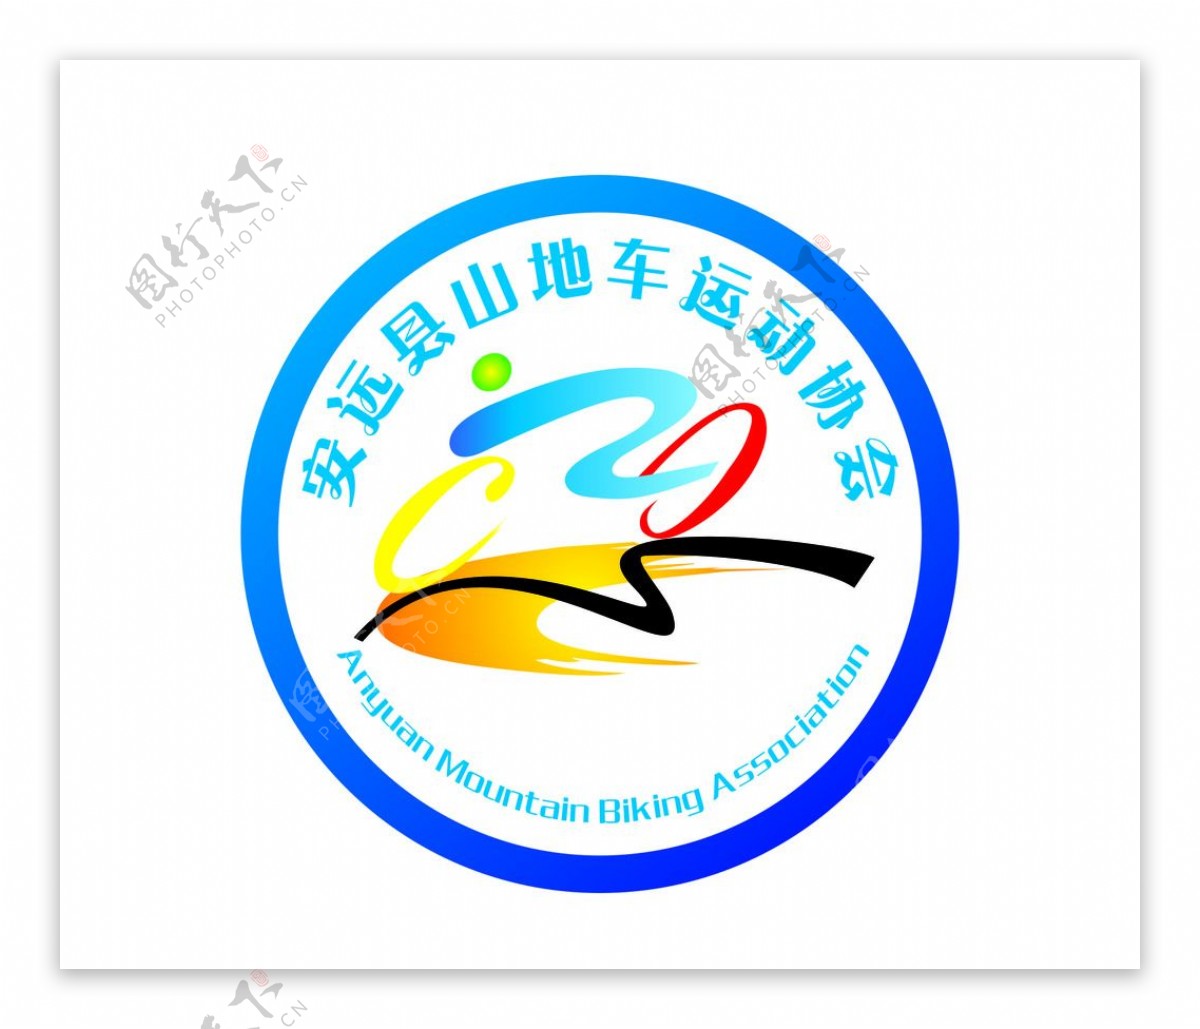 安远县山地车协会标志标志图片